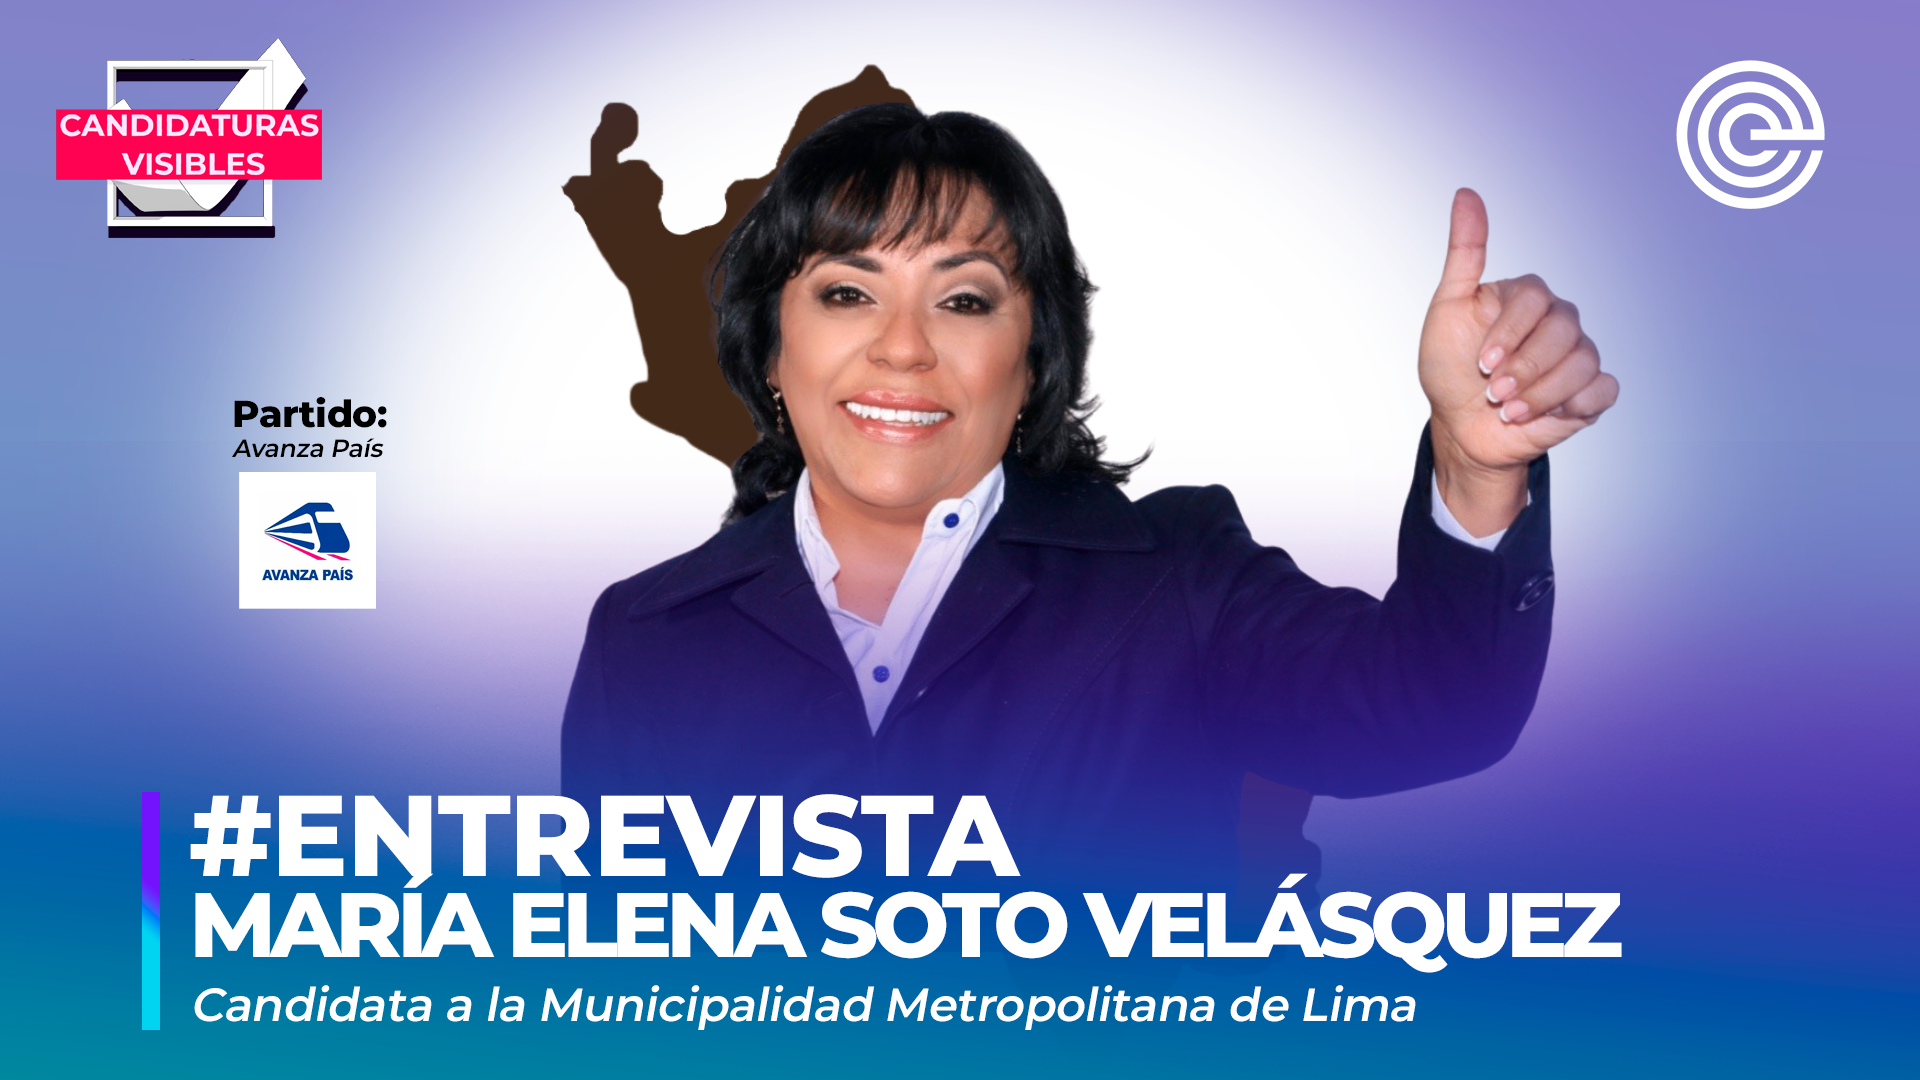 Candidaturas Visibles | María Elena Soto, candidata a la Municipalidad Metropolitana de Lima por Avanza País